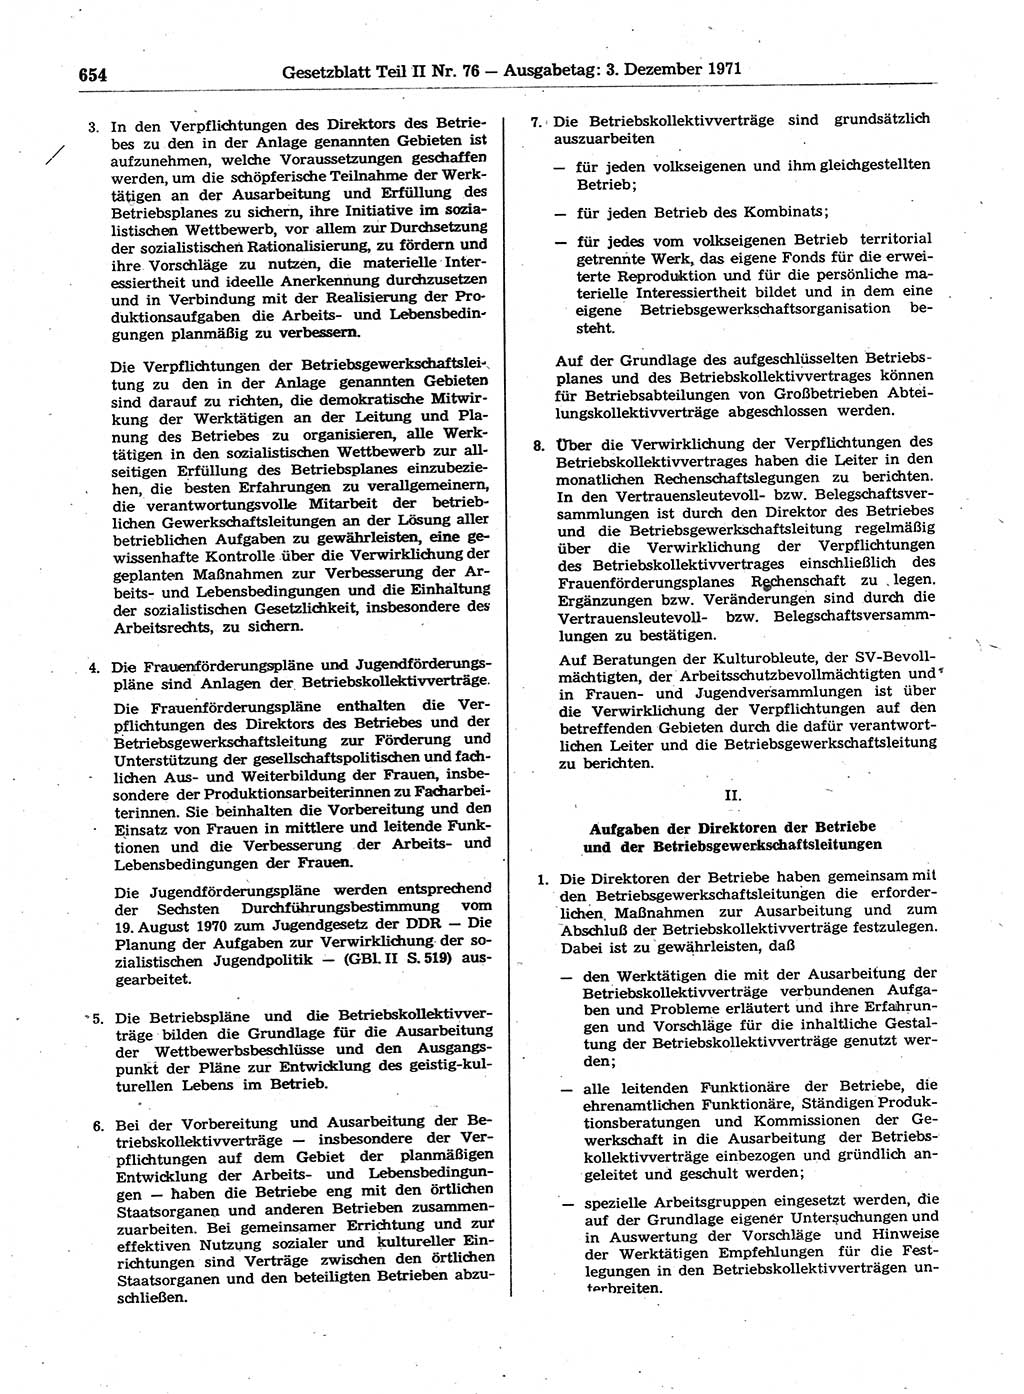 Gesetzblatt (GBl.) der Deutschen Demokratischen Republik (DDR) Teil ⅠⅠ 1971, Seite 654 (GBl. DDR ⅠⅠ 1971, S. 654)